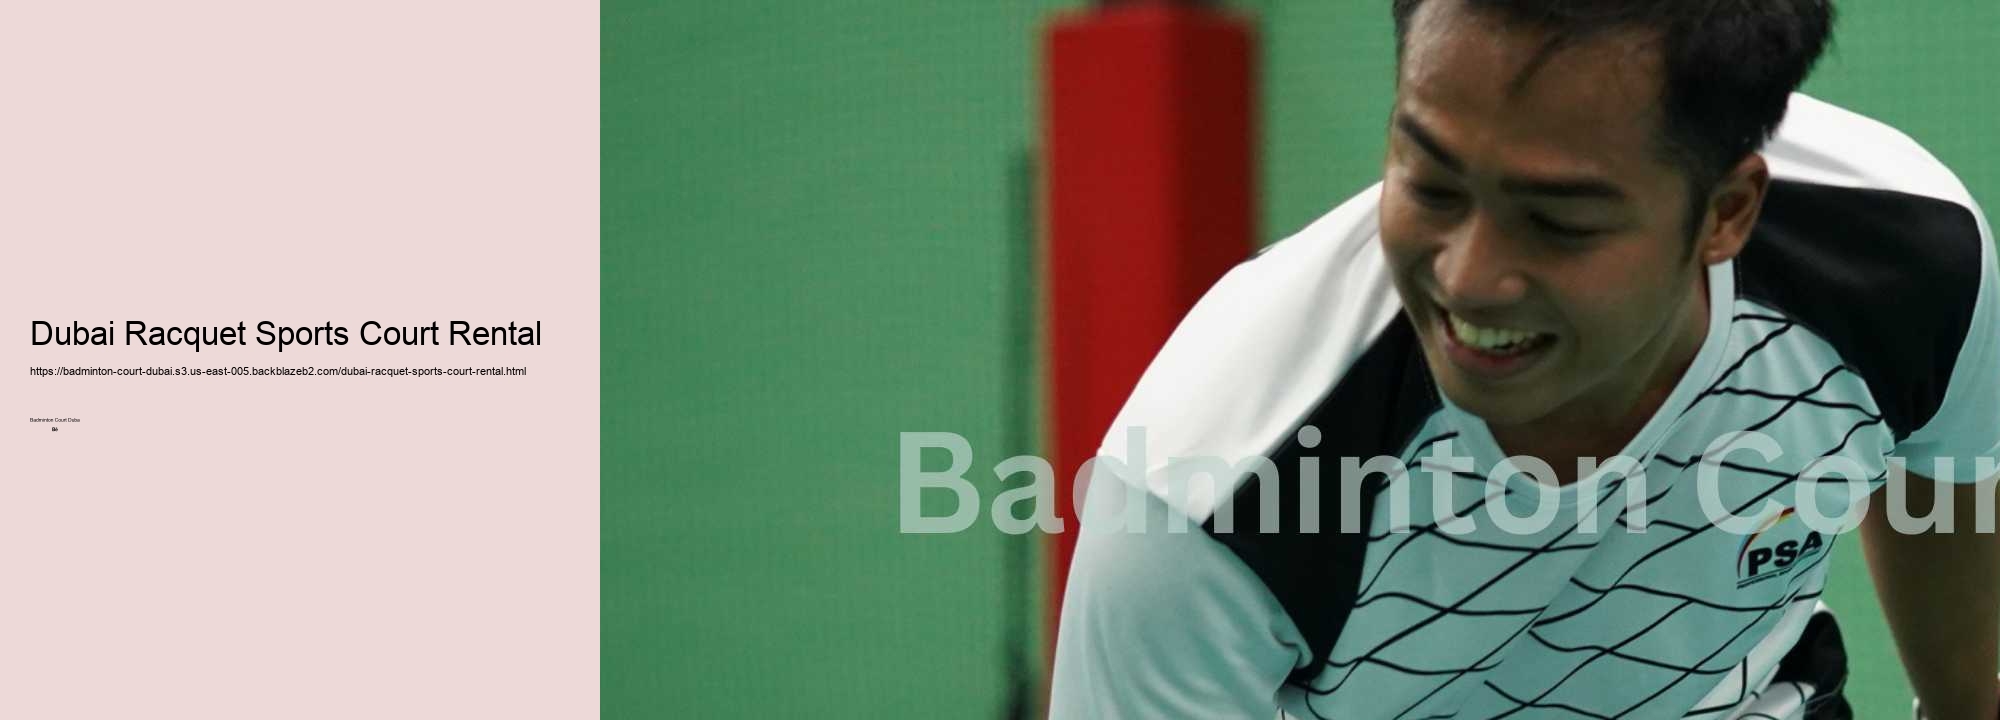 Dubai Racquet Sports Court Rental